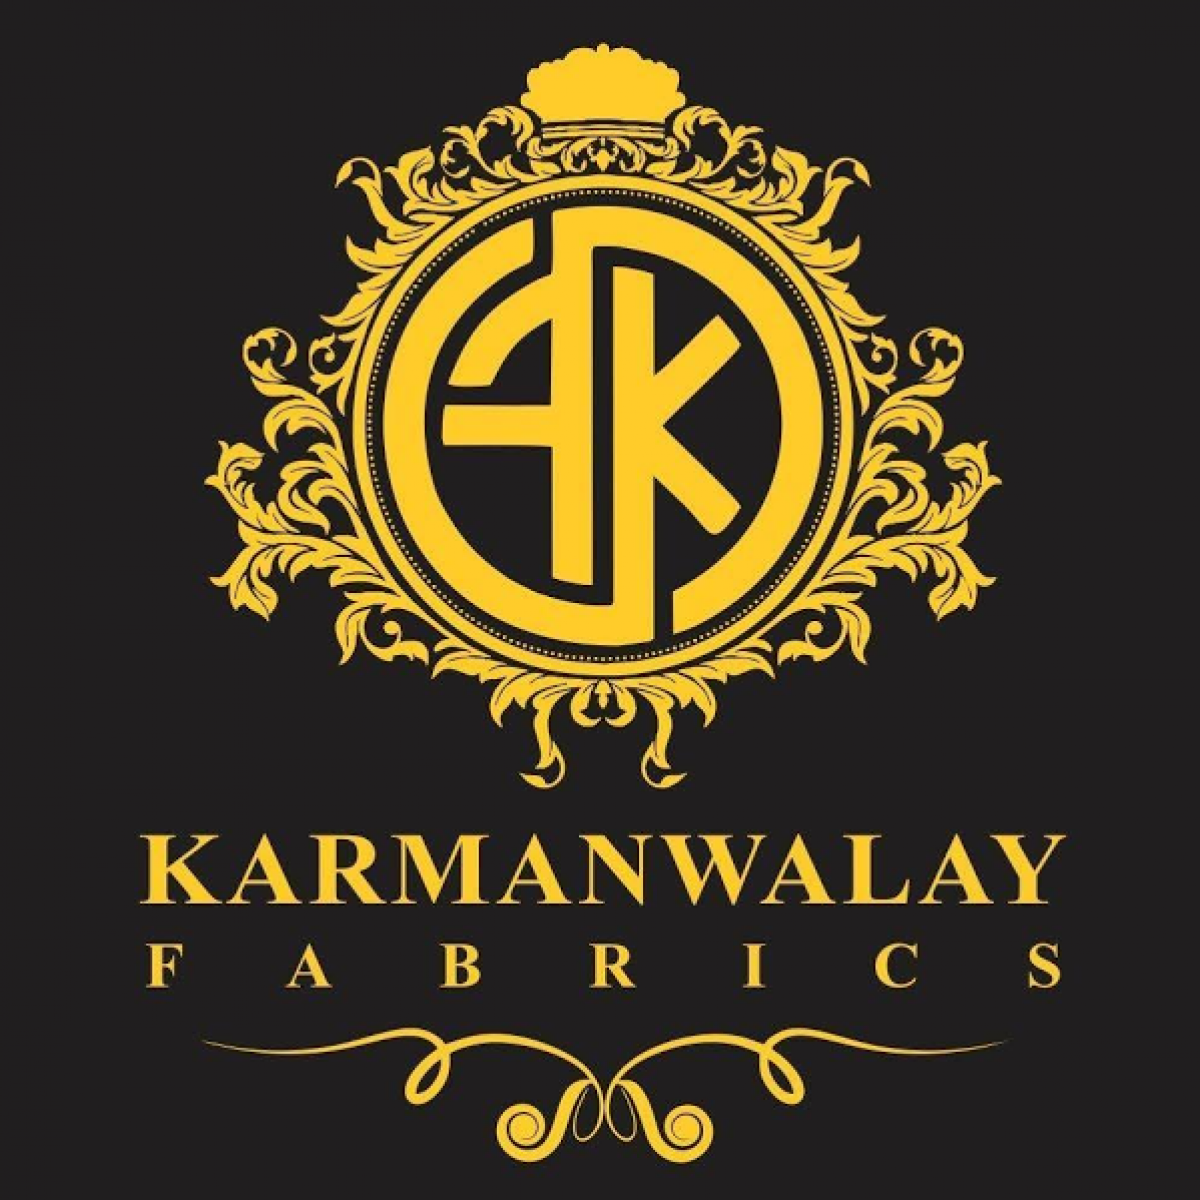 Karmanwalay Fabrics